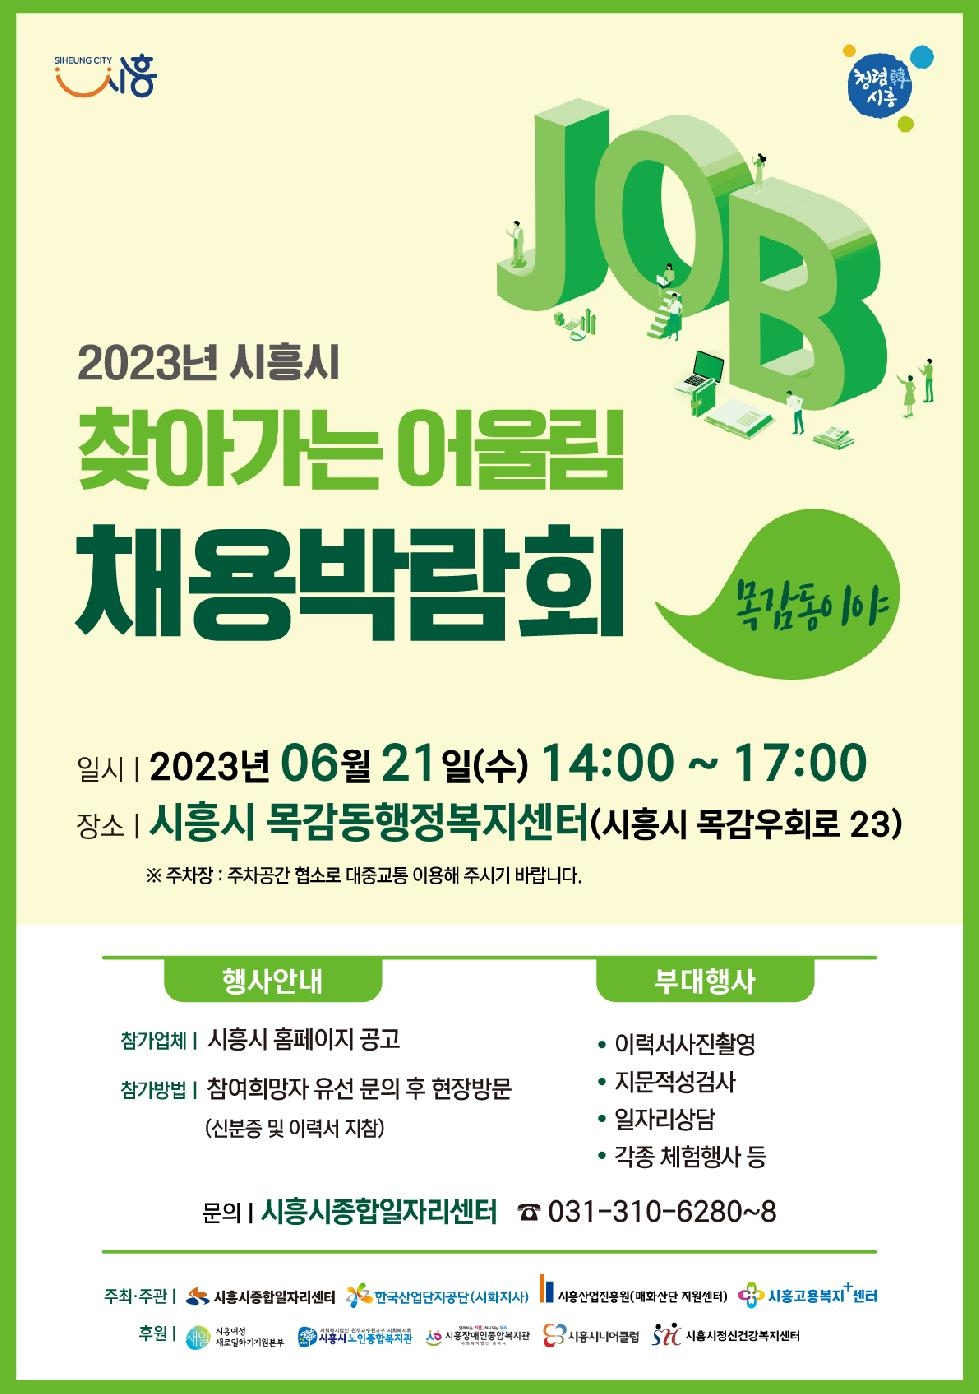 시흥시 2023 찾아가는 어울림 채용 박람회 21일 목감동서 개최